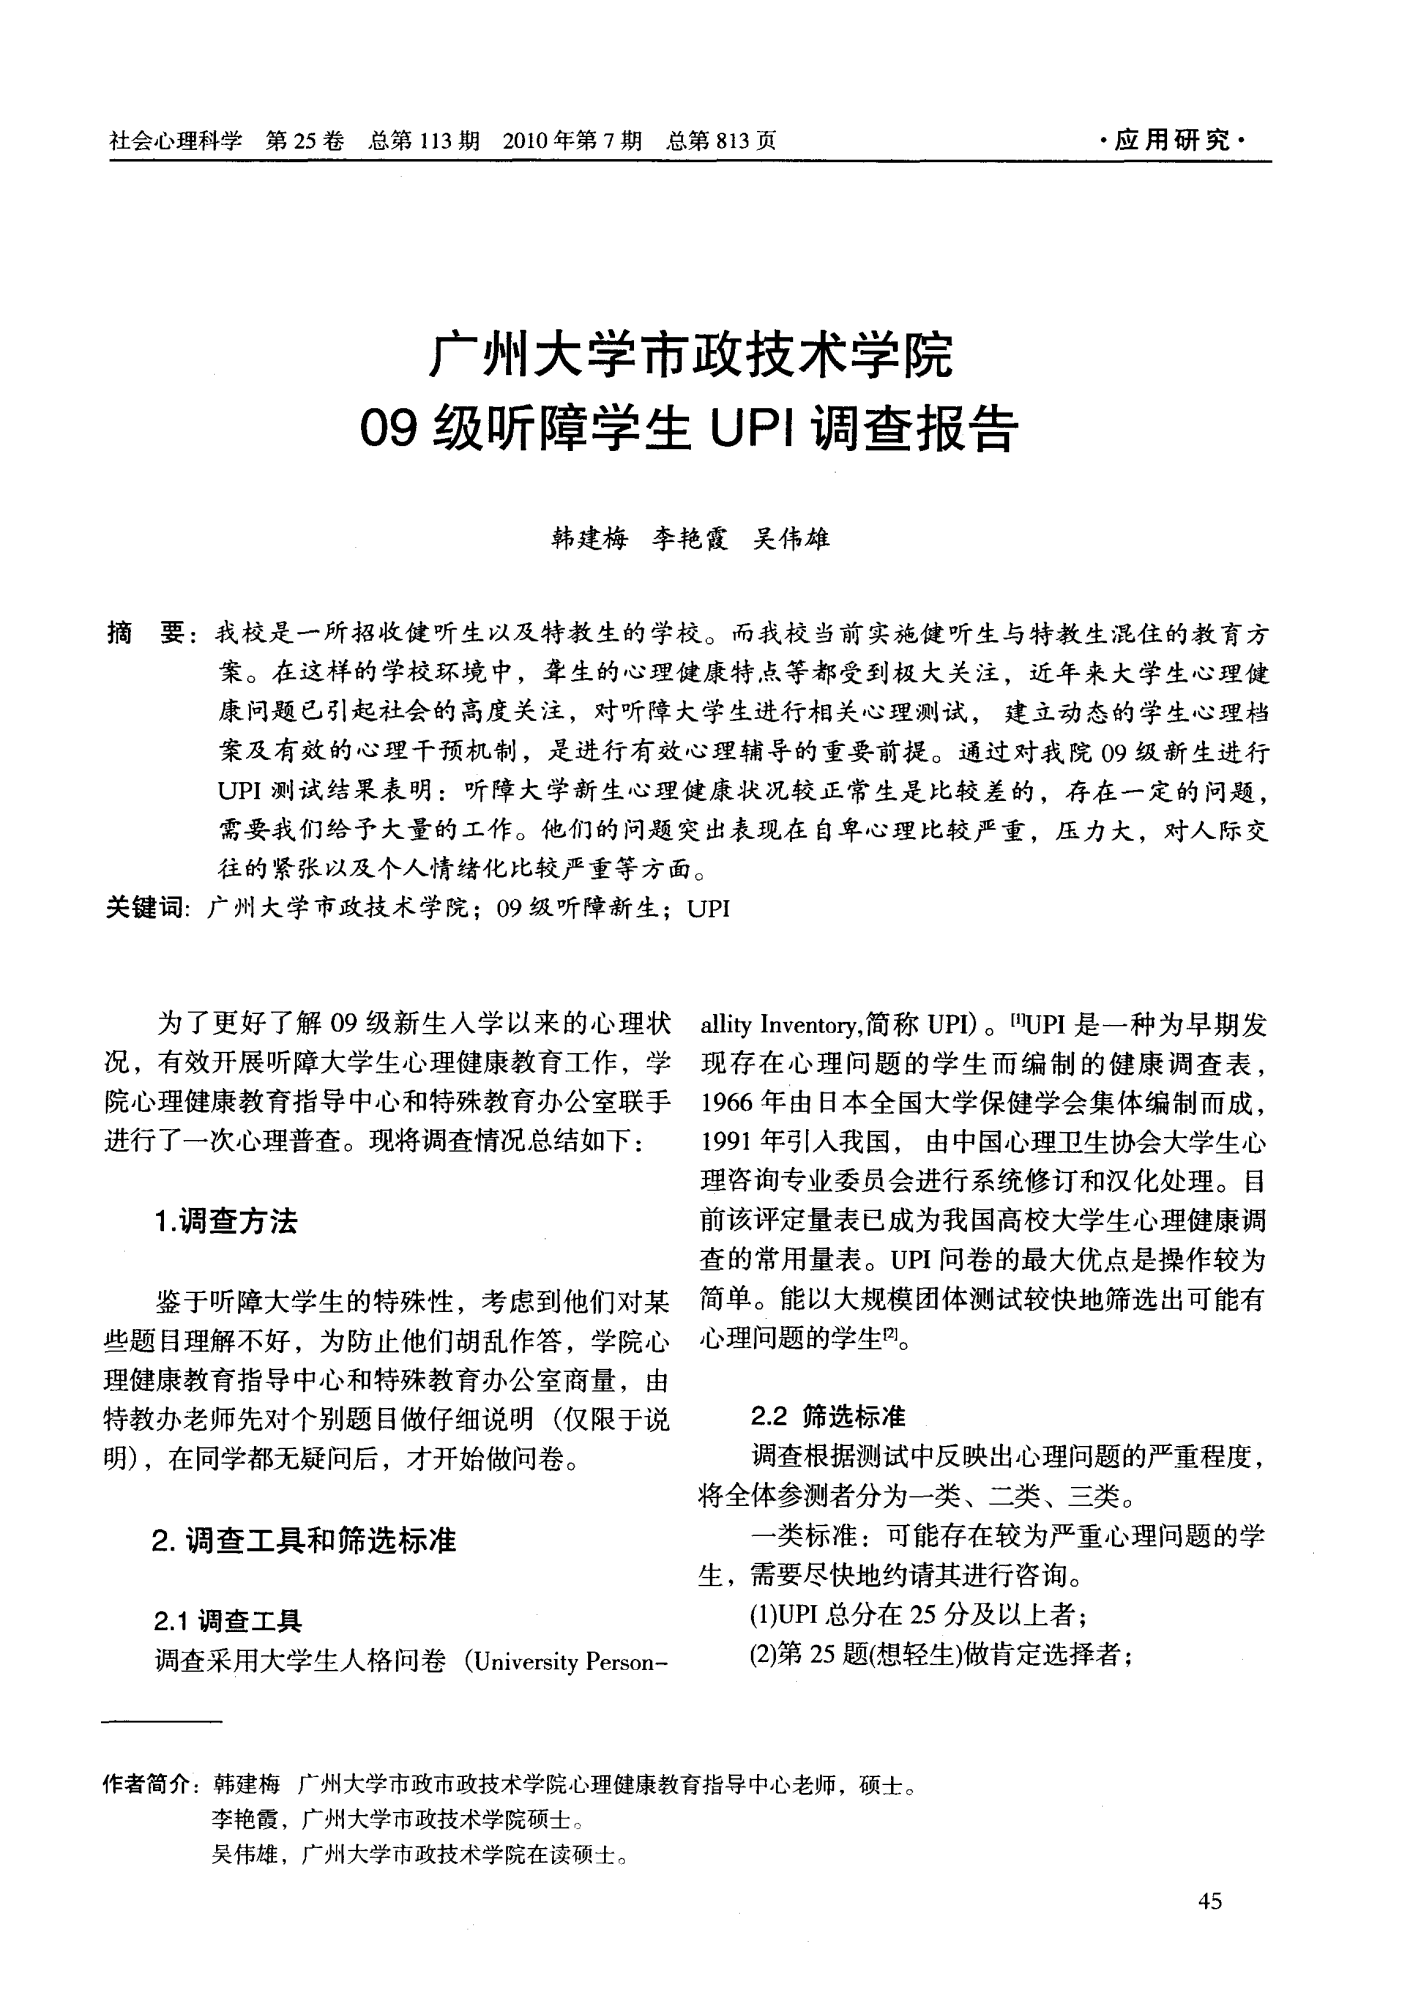 广州大学市政技术学院09级听障学生UPI调查报告